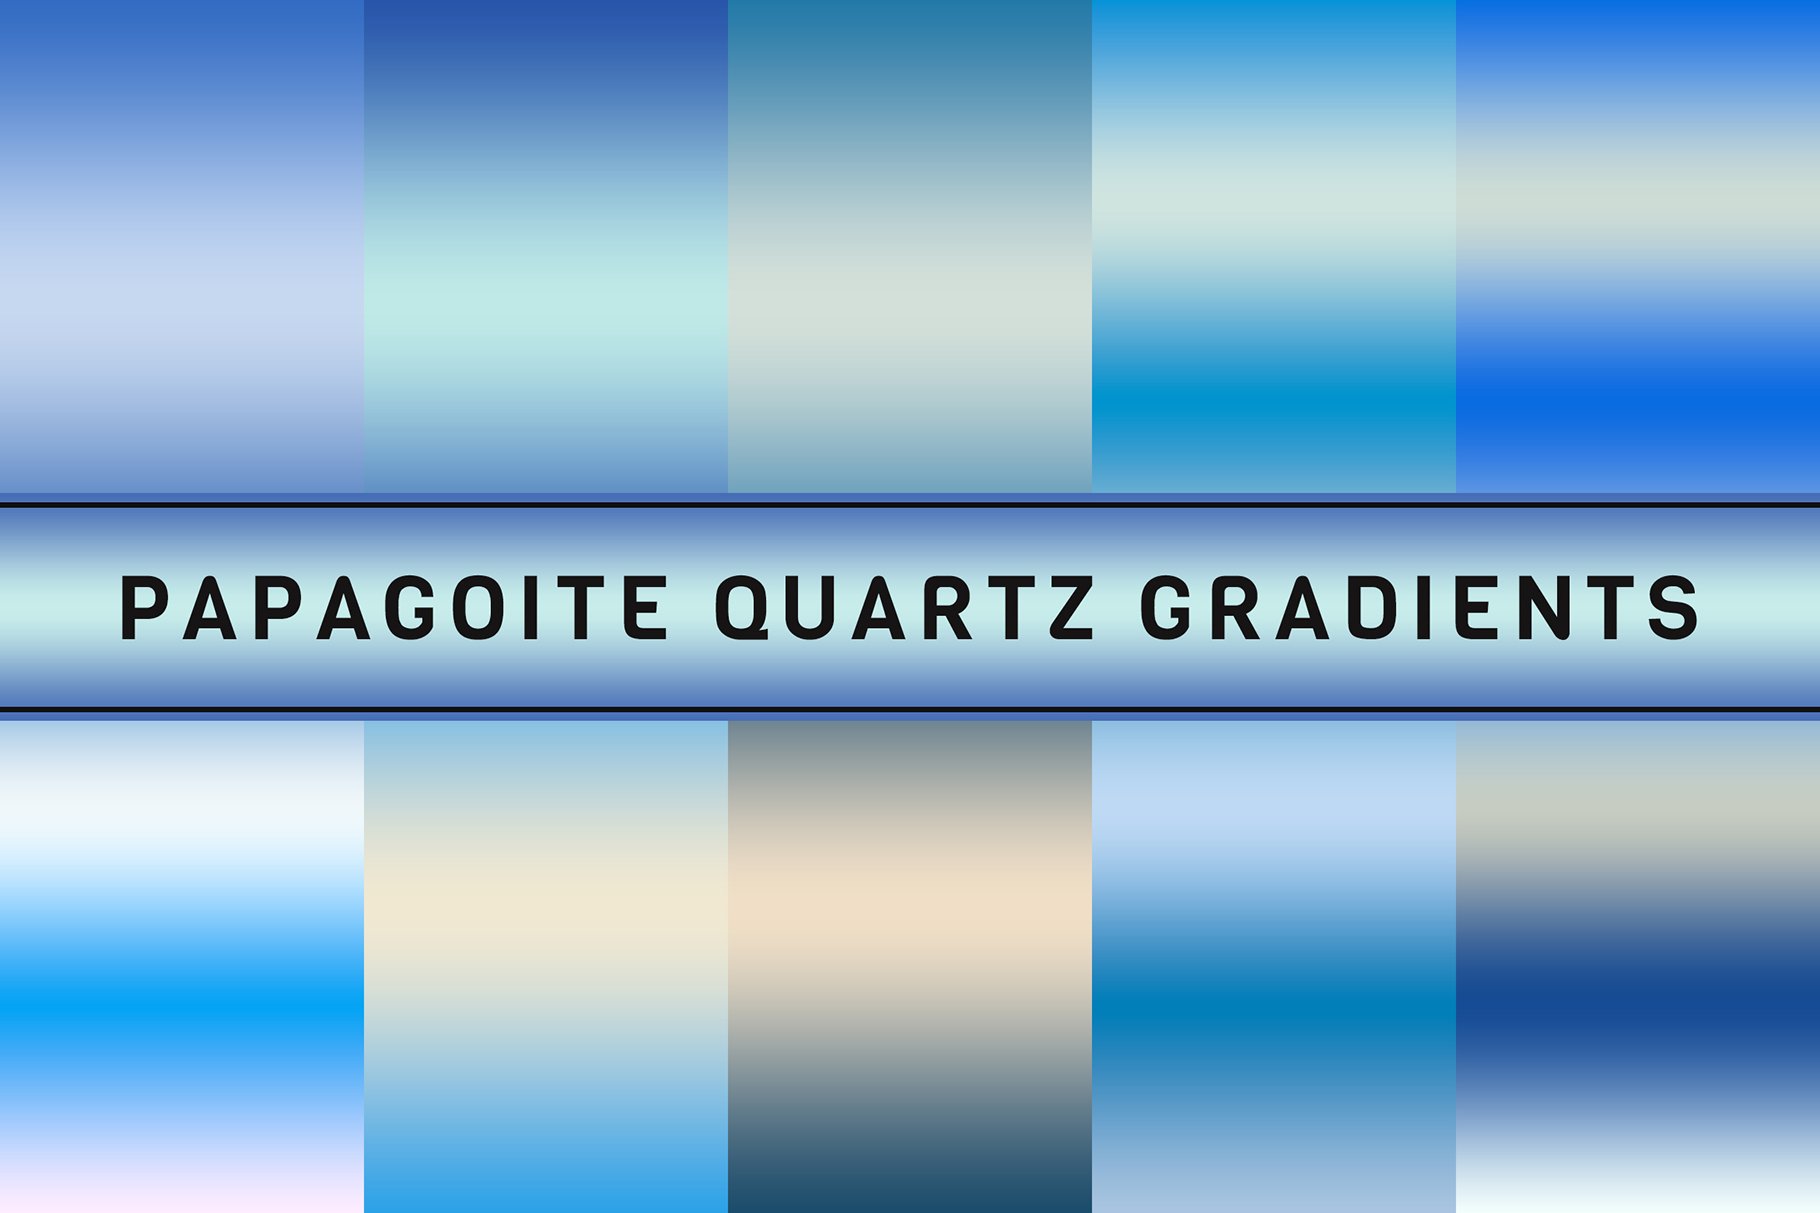 Papagoite Quartz Gradientscover image.